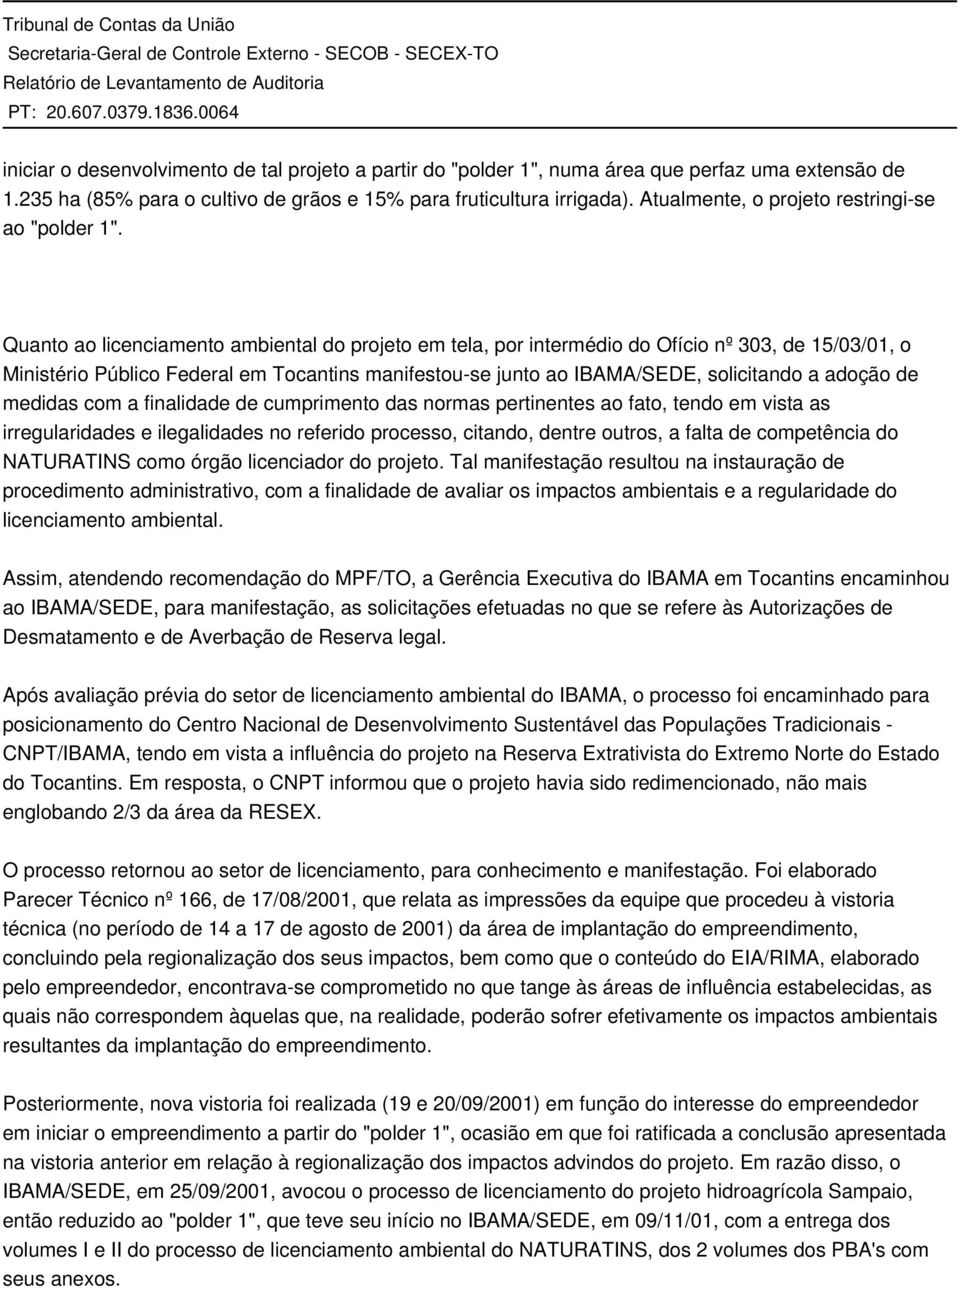 Quanto ao licenciamento ambiental do projeto em tela, por intermédio do Ofício nº 303, de 15/03/01, o Ministério Público Federal em Tocantins manifestou-se junto ao IBAMA/SEDE, solicitando a adoção